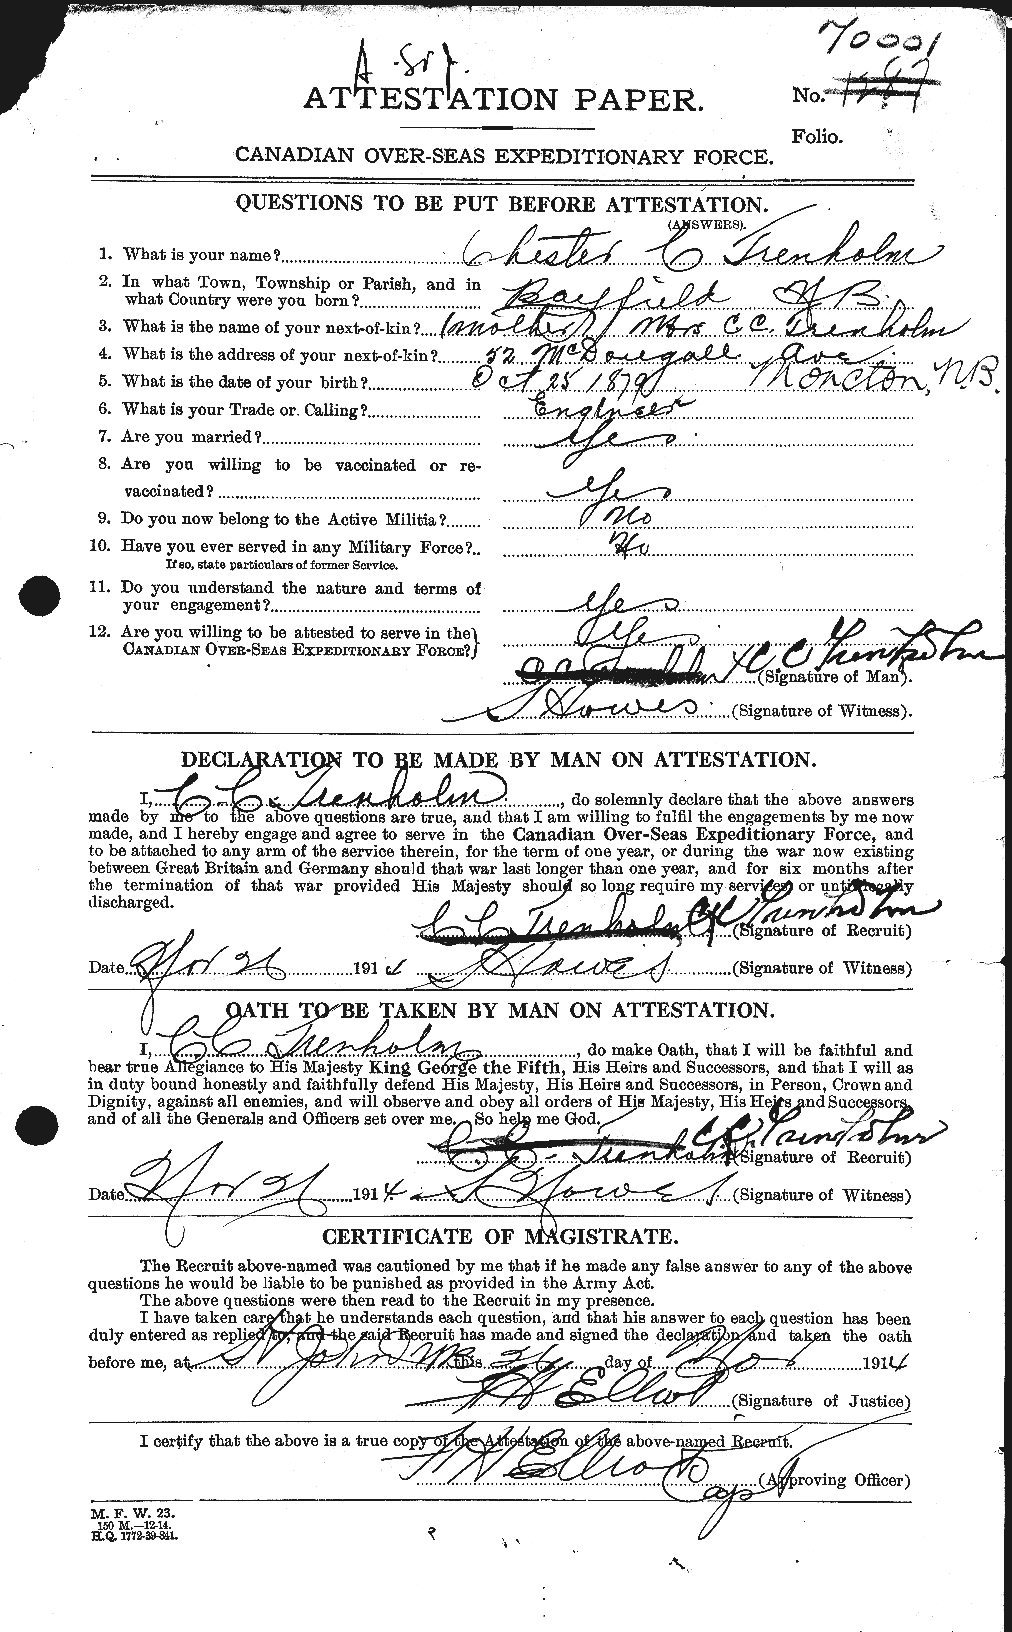 Dossiers du Personnel de la Première Guerre mondiale - CEC 638452a